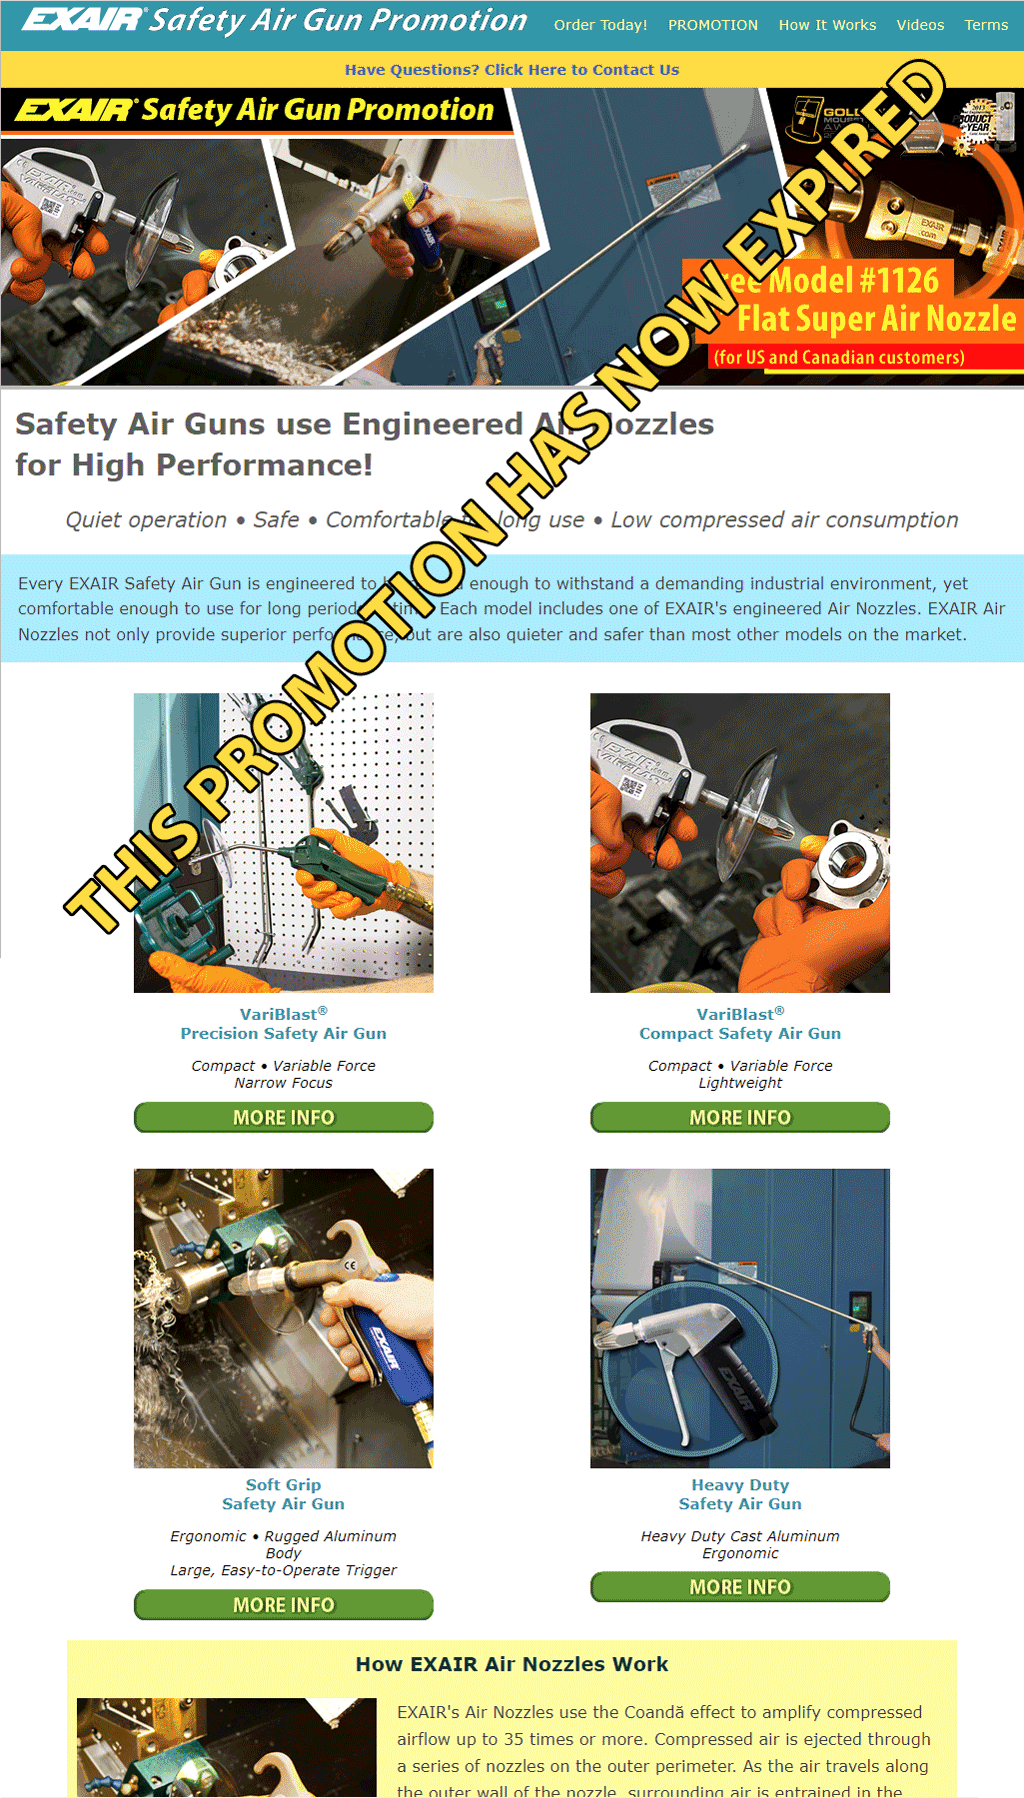 EXAIR Safety Air Guns